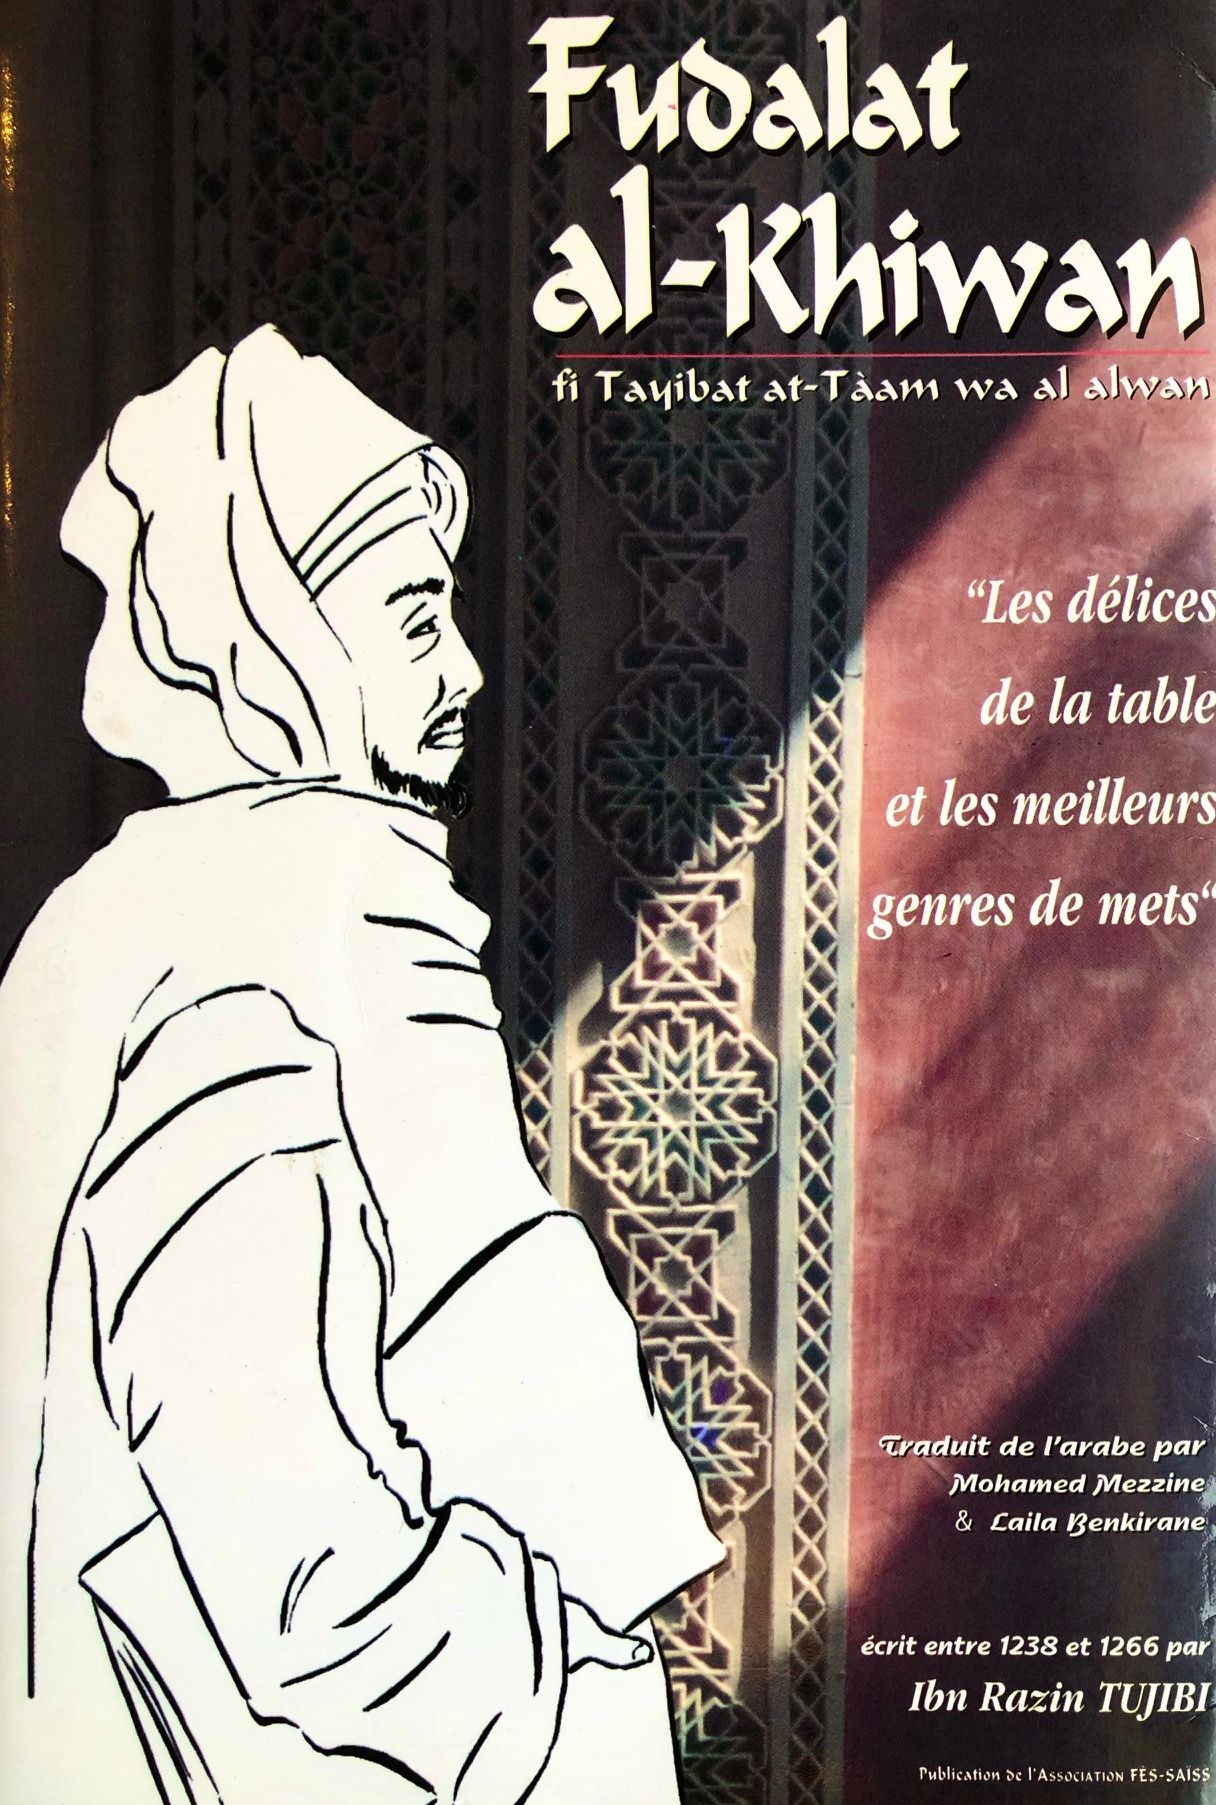 (*NEW ARRIVAL*) (North African) Ibn Razin Tujibi. Saveurs et Parfums de l'Occident MusulmanFudalat al-Khiwan: fi Tayibat at-Taam wa al alwan